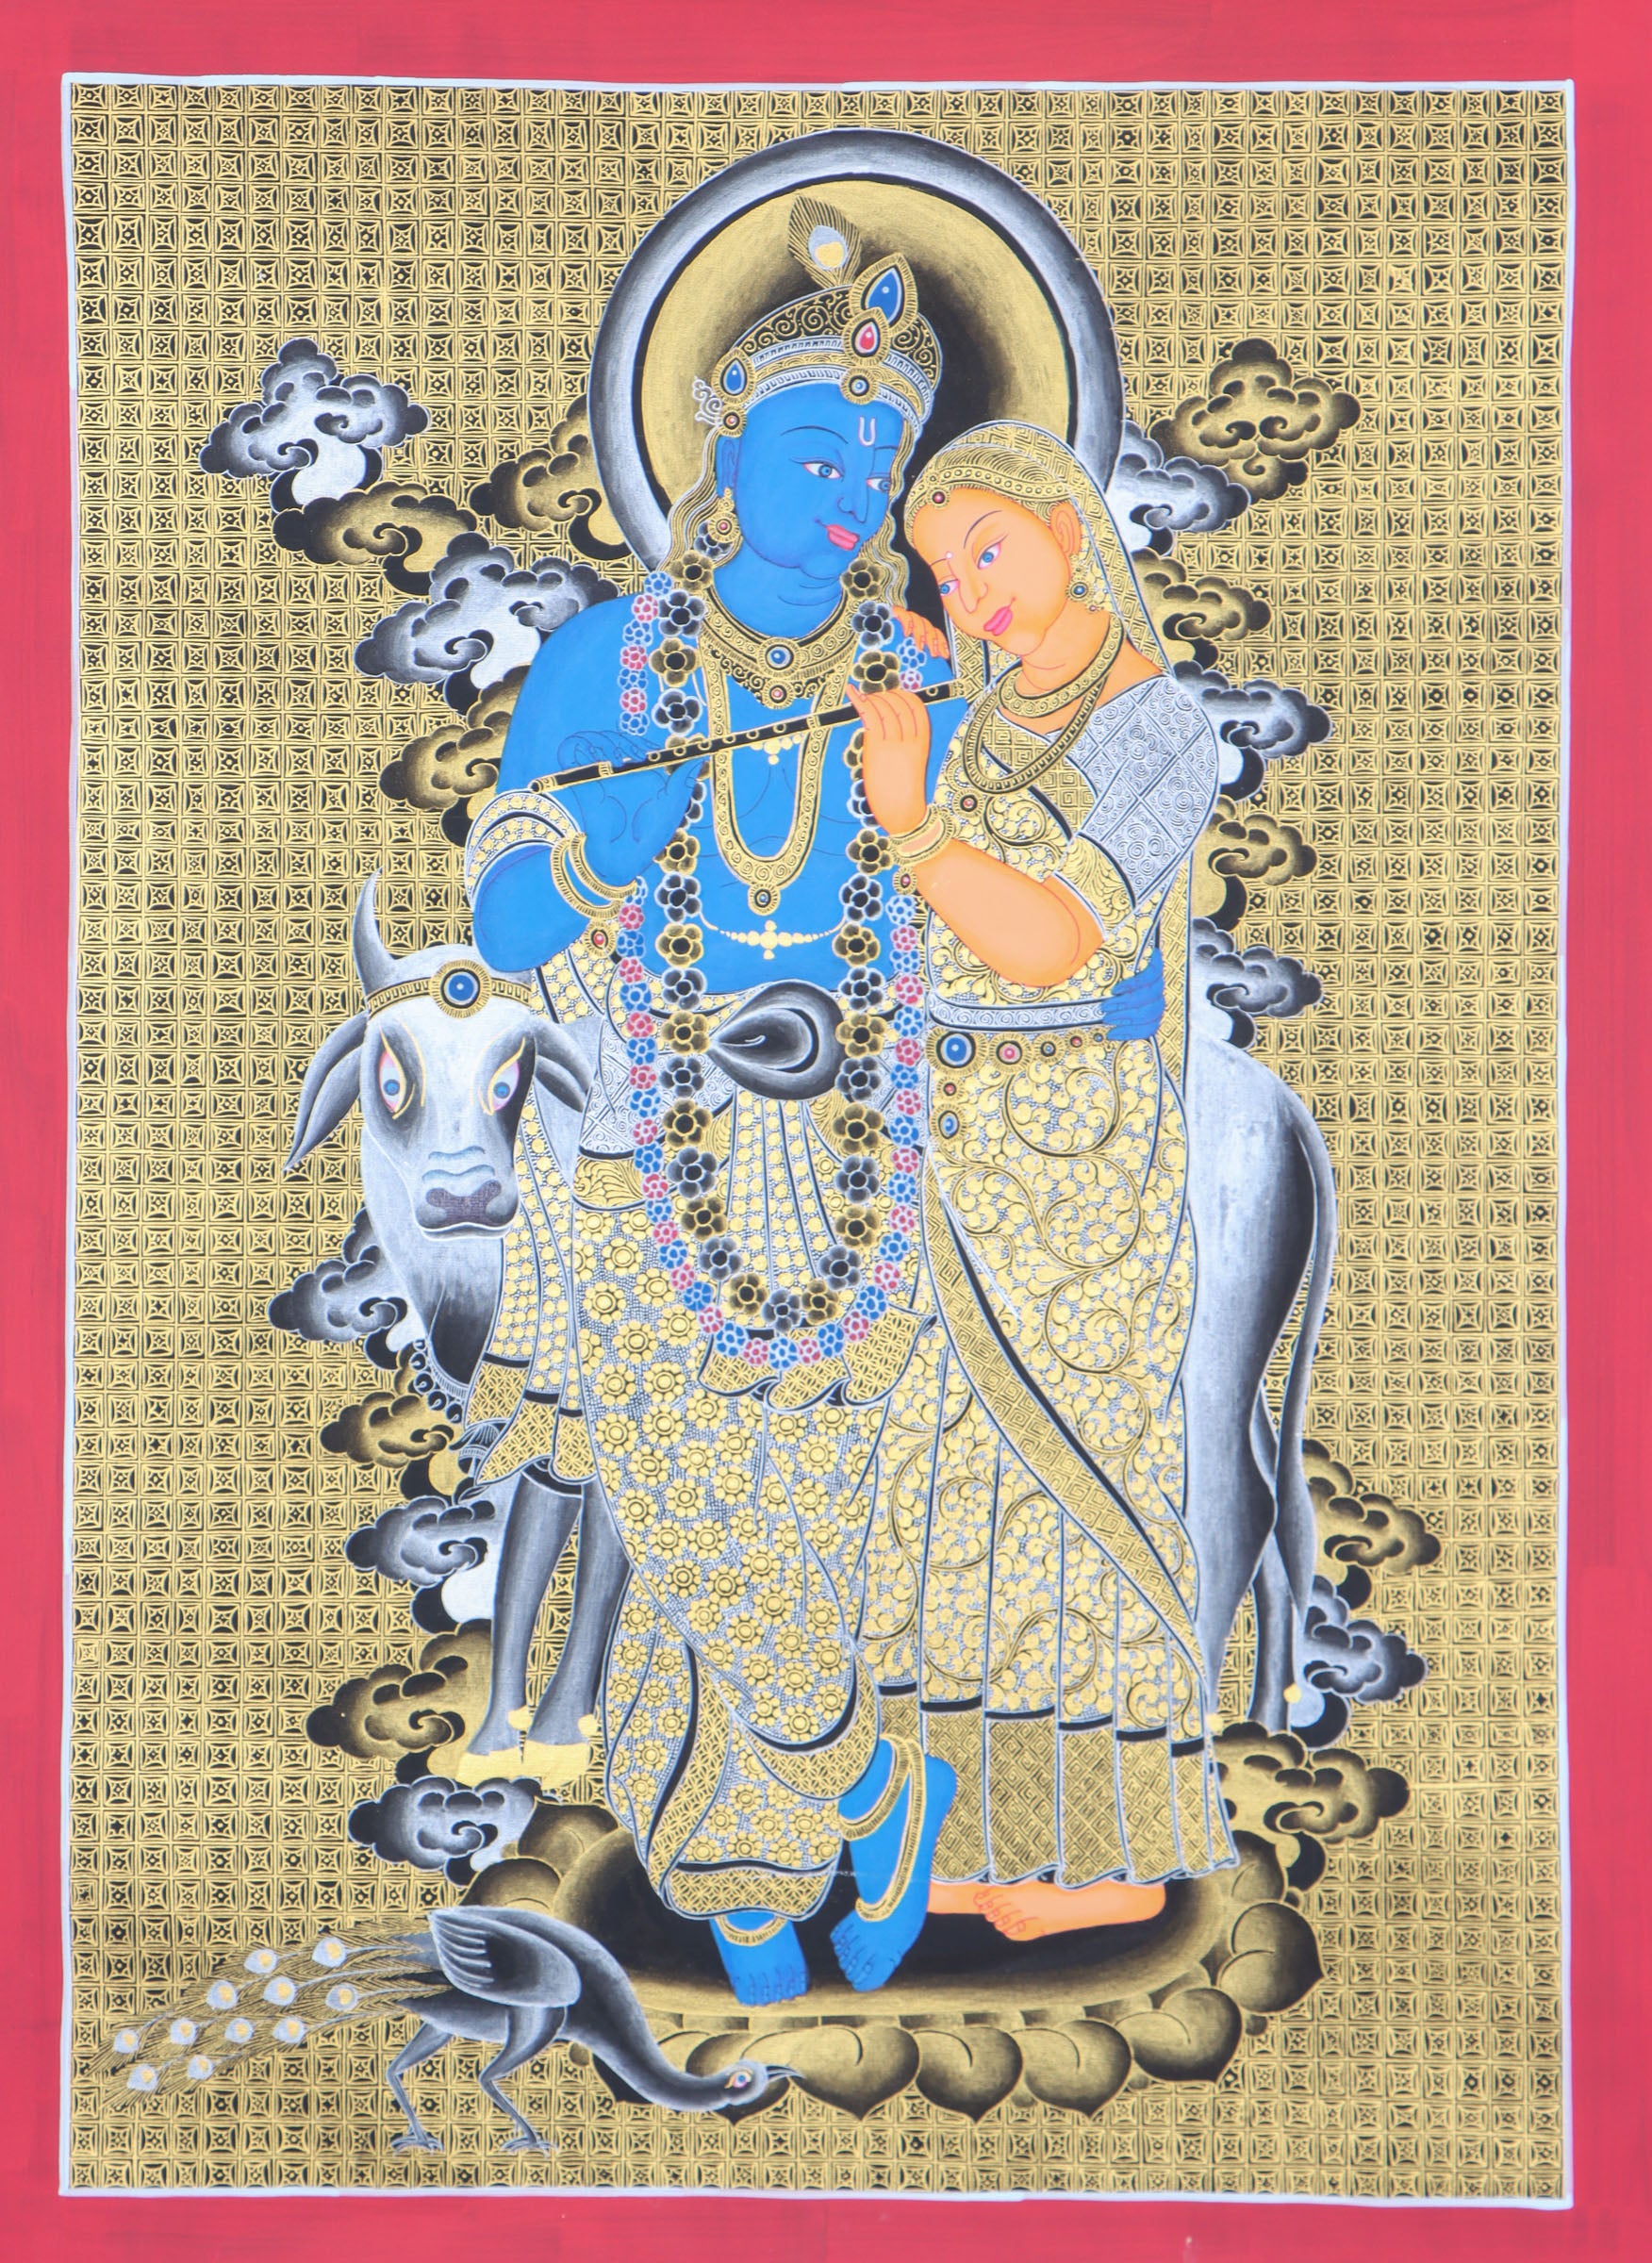 Radha Krishna Thangka for meditation and spirituality.